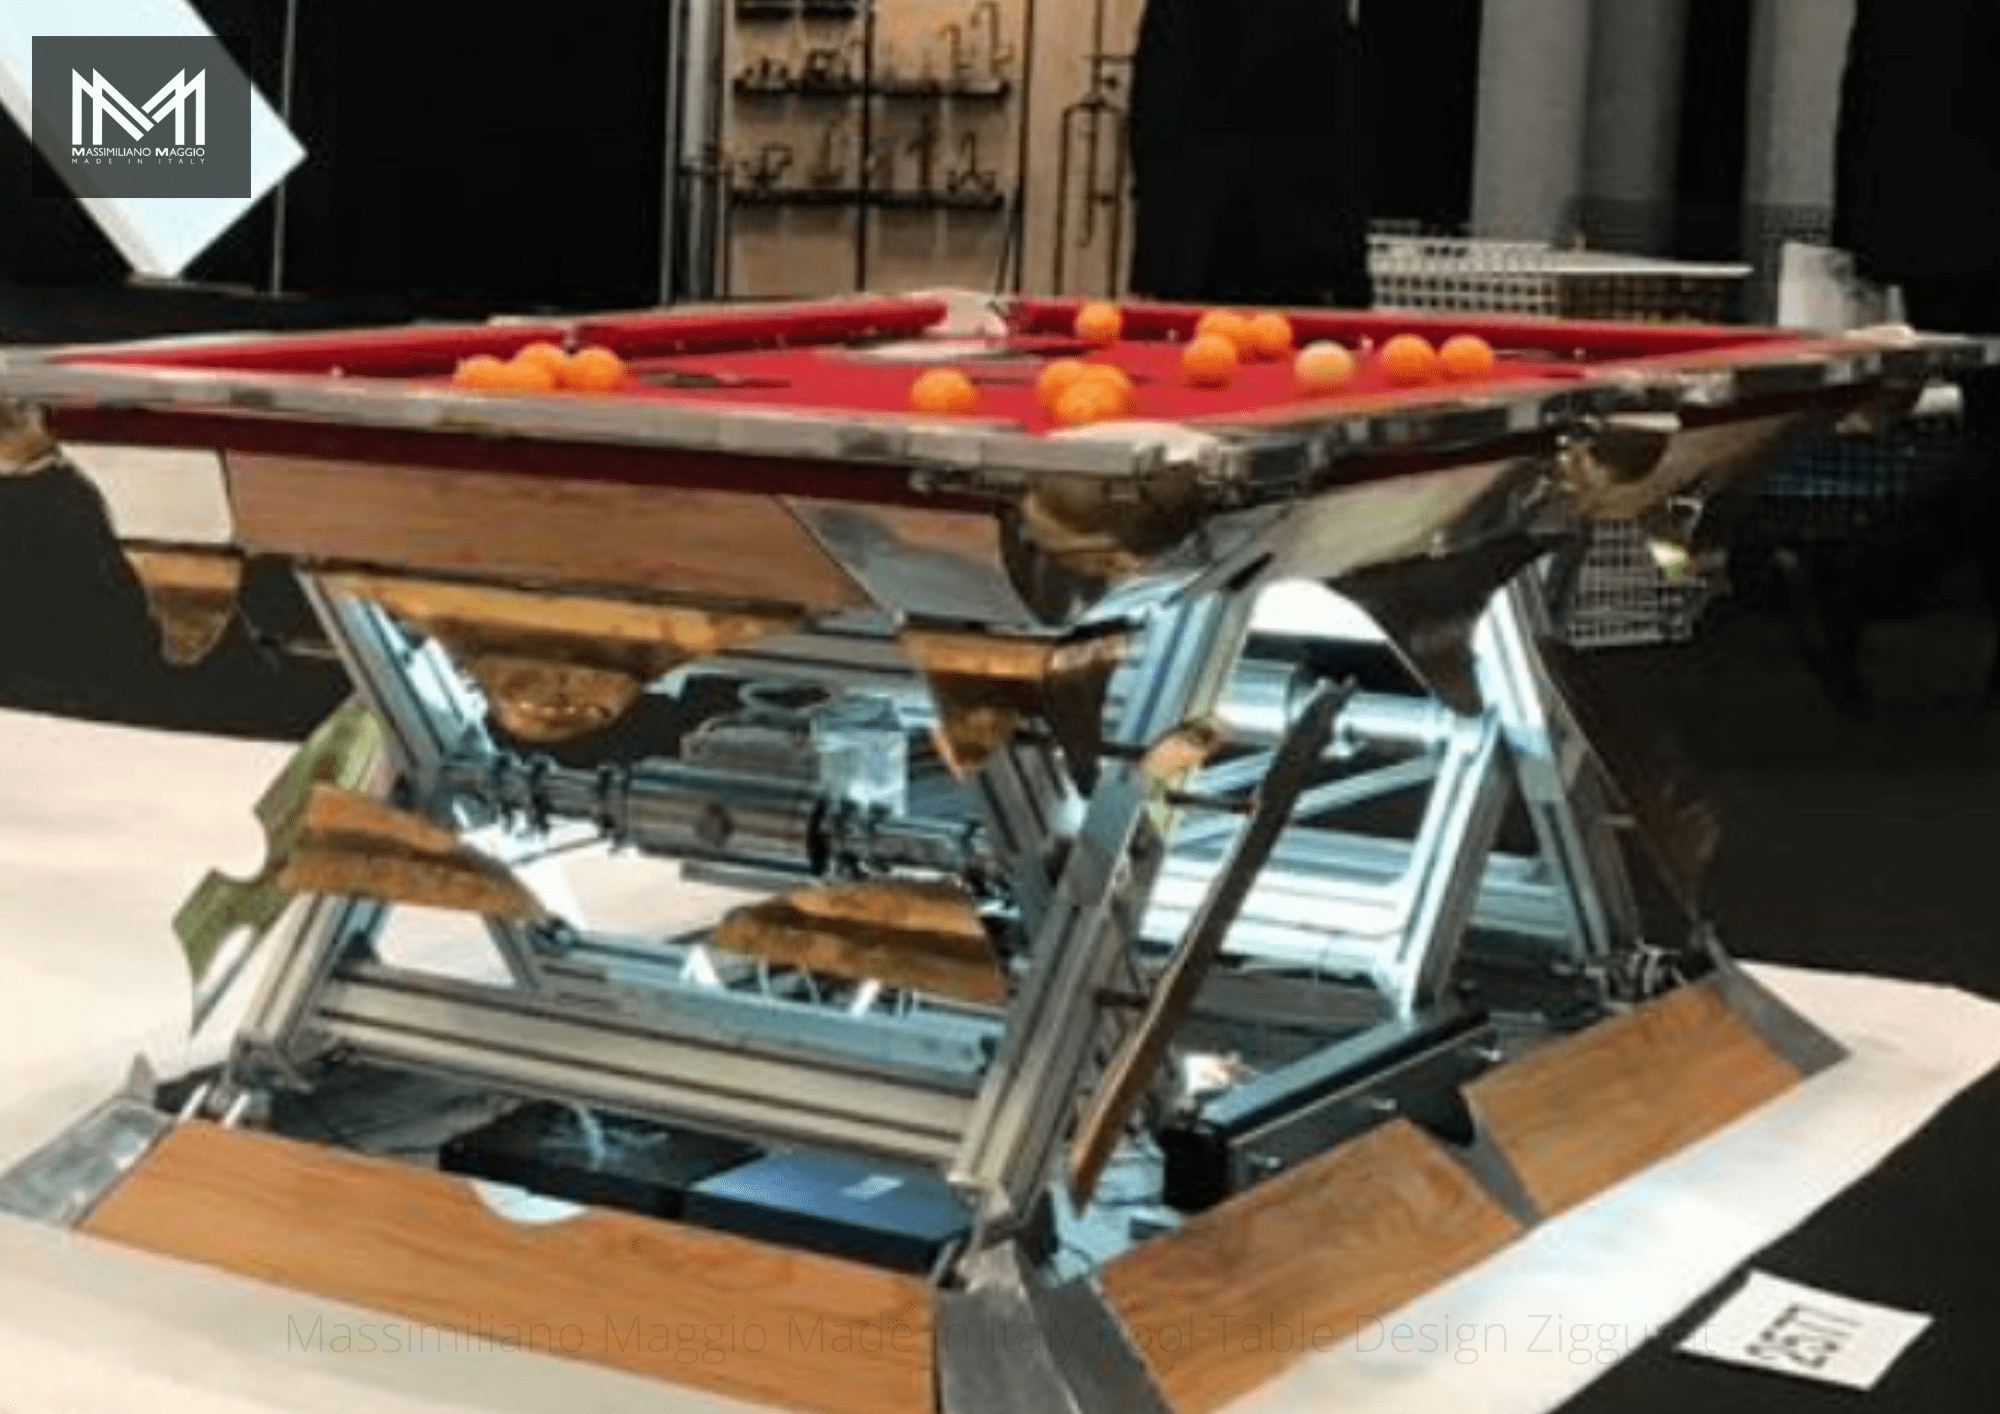 4 Revolution Massimiliano Maggio Made in Italy Luxury Pool Table biliardo tavolo